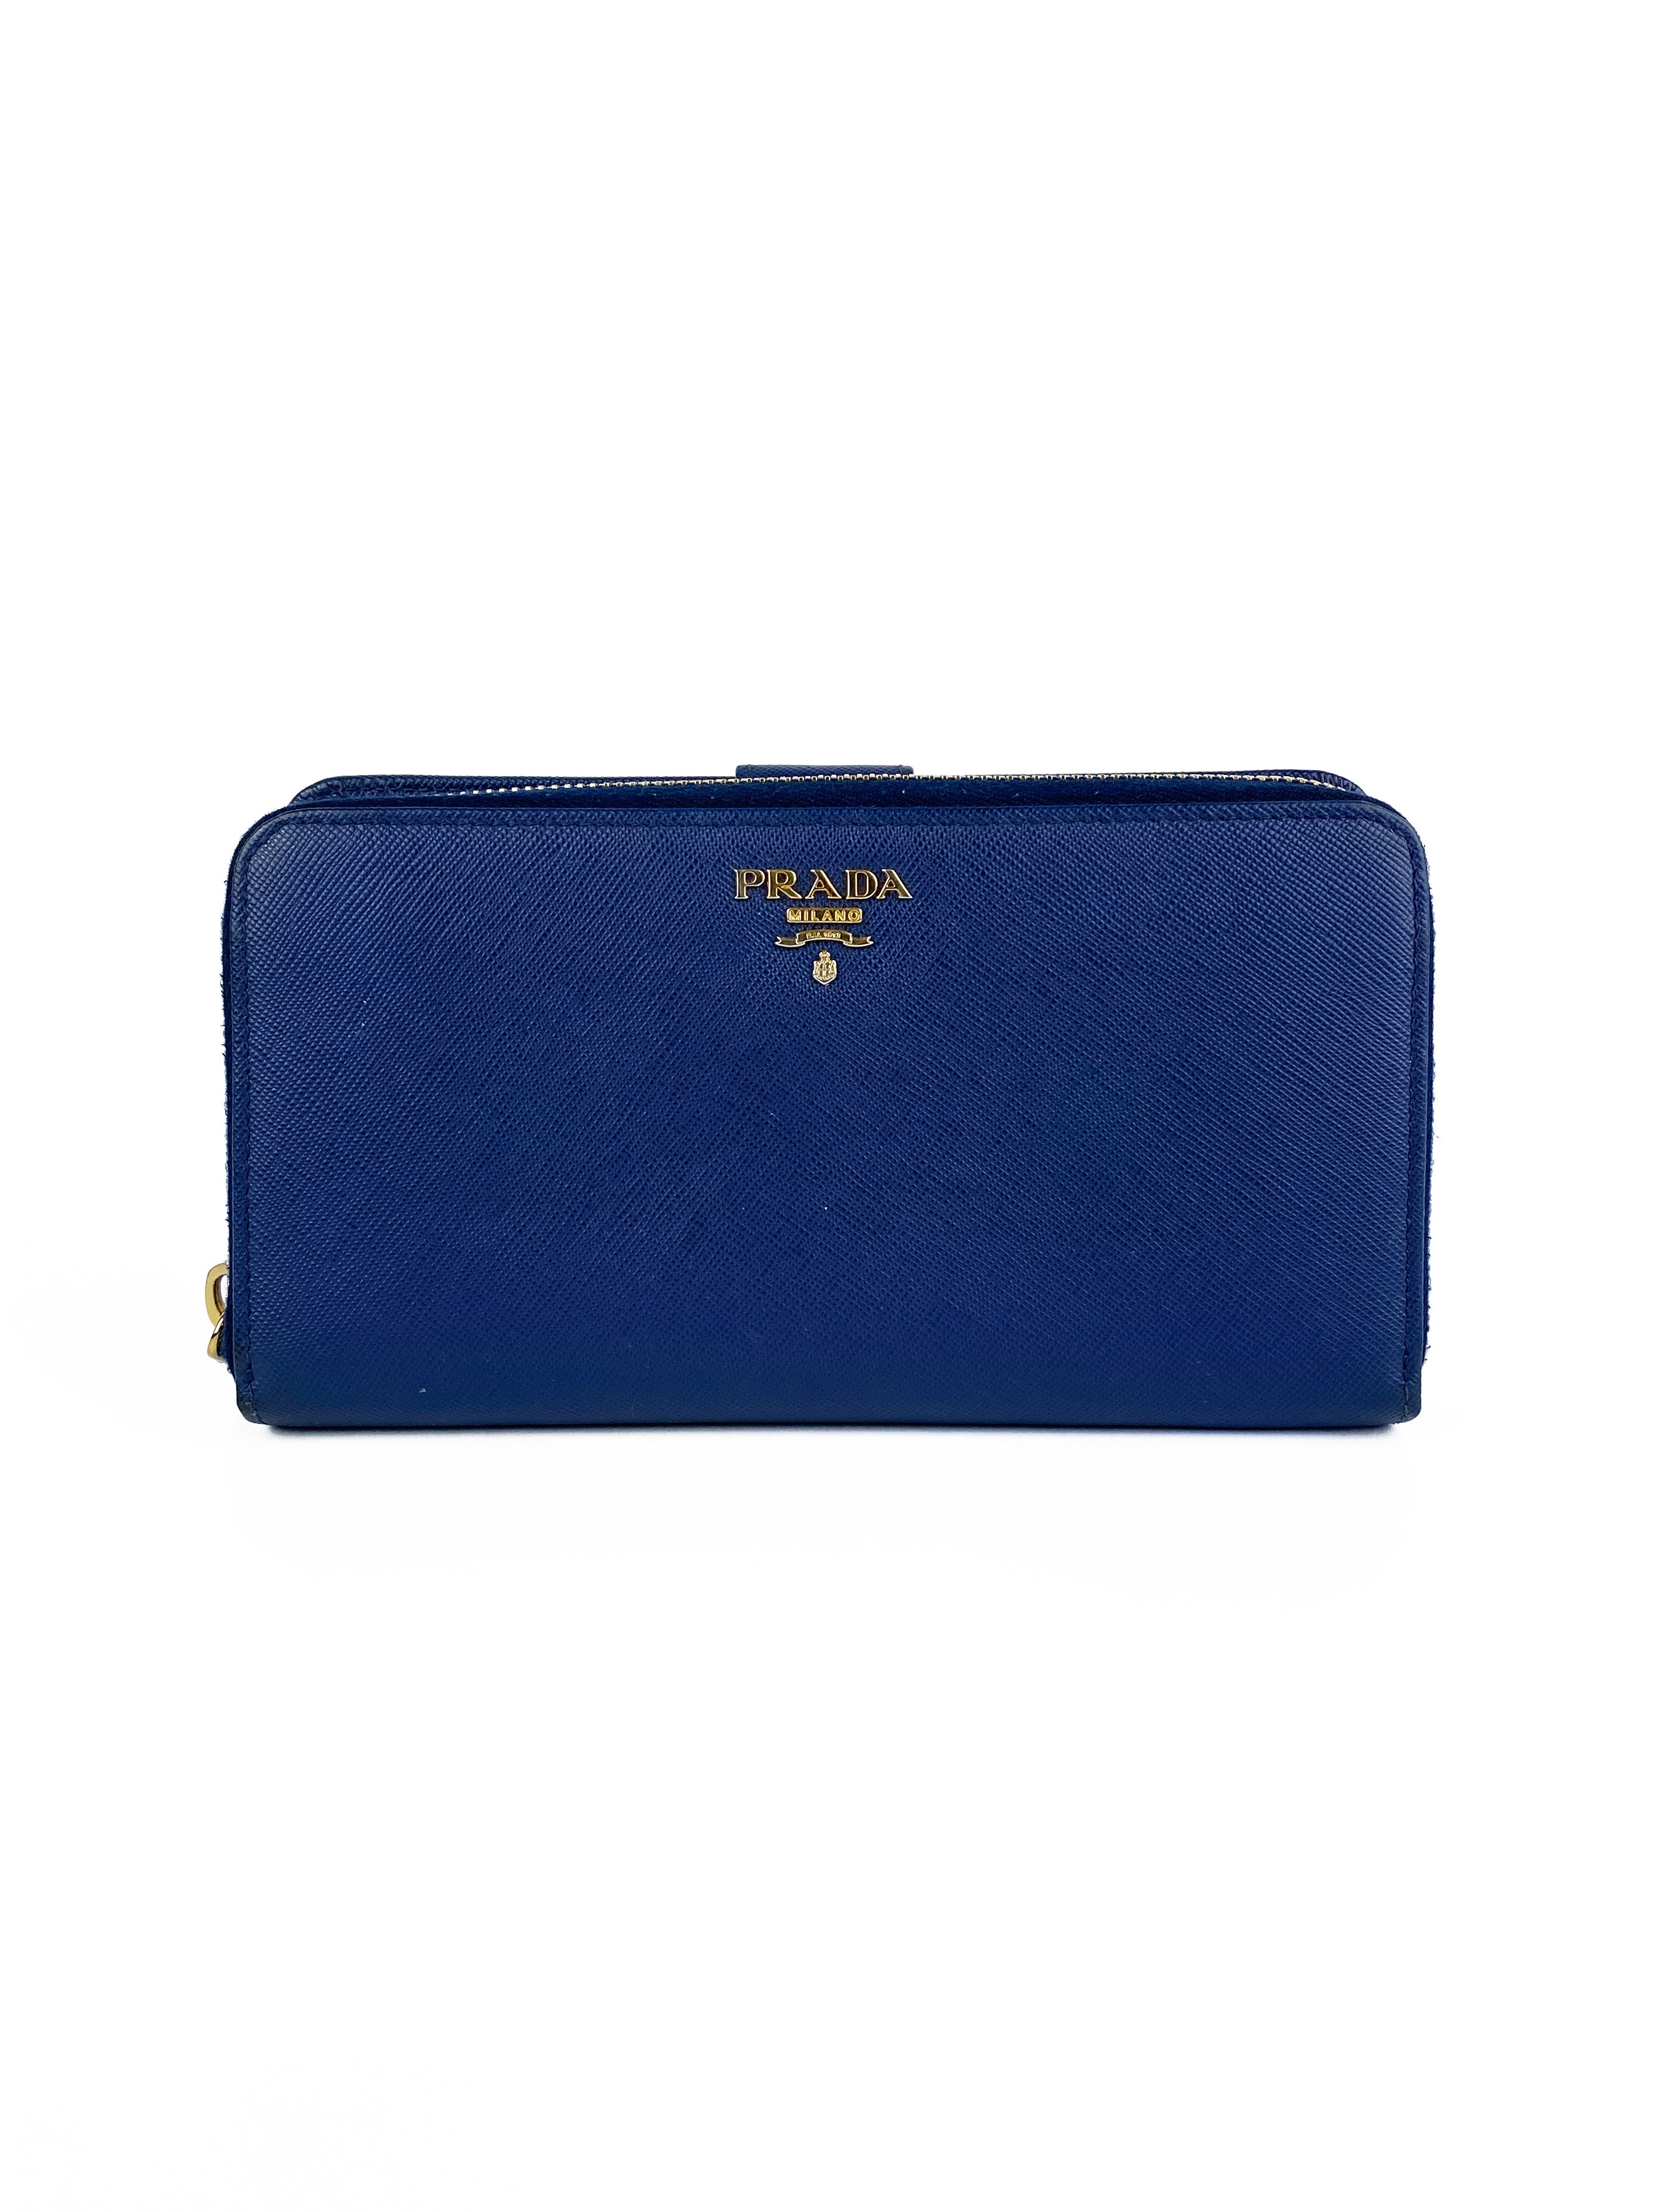 Prada Navy Blue Saffiano Zipped Wallet – Votre Luxe